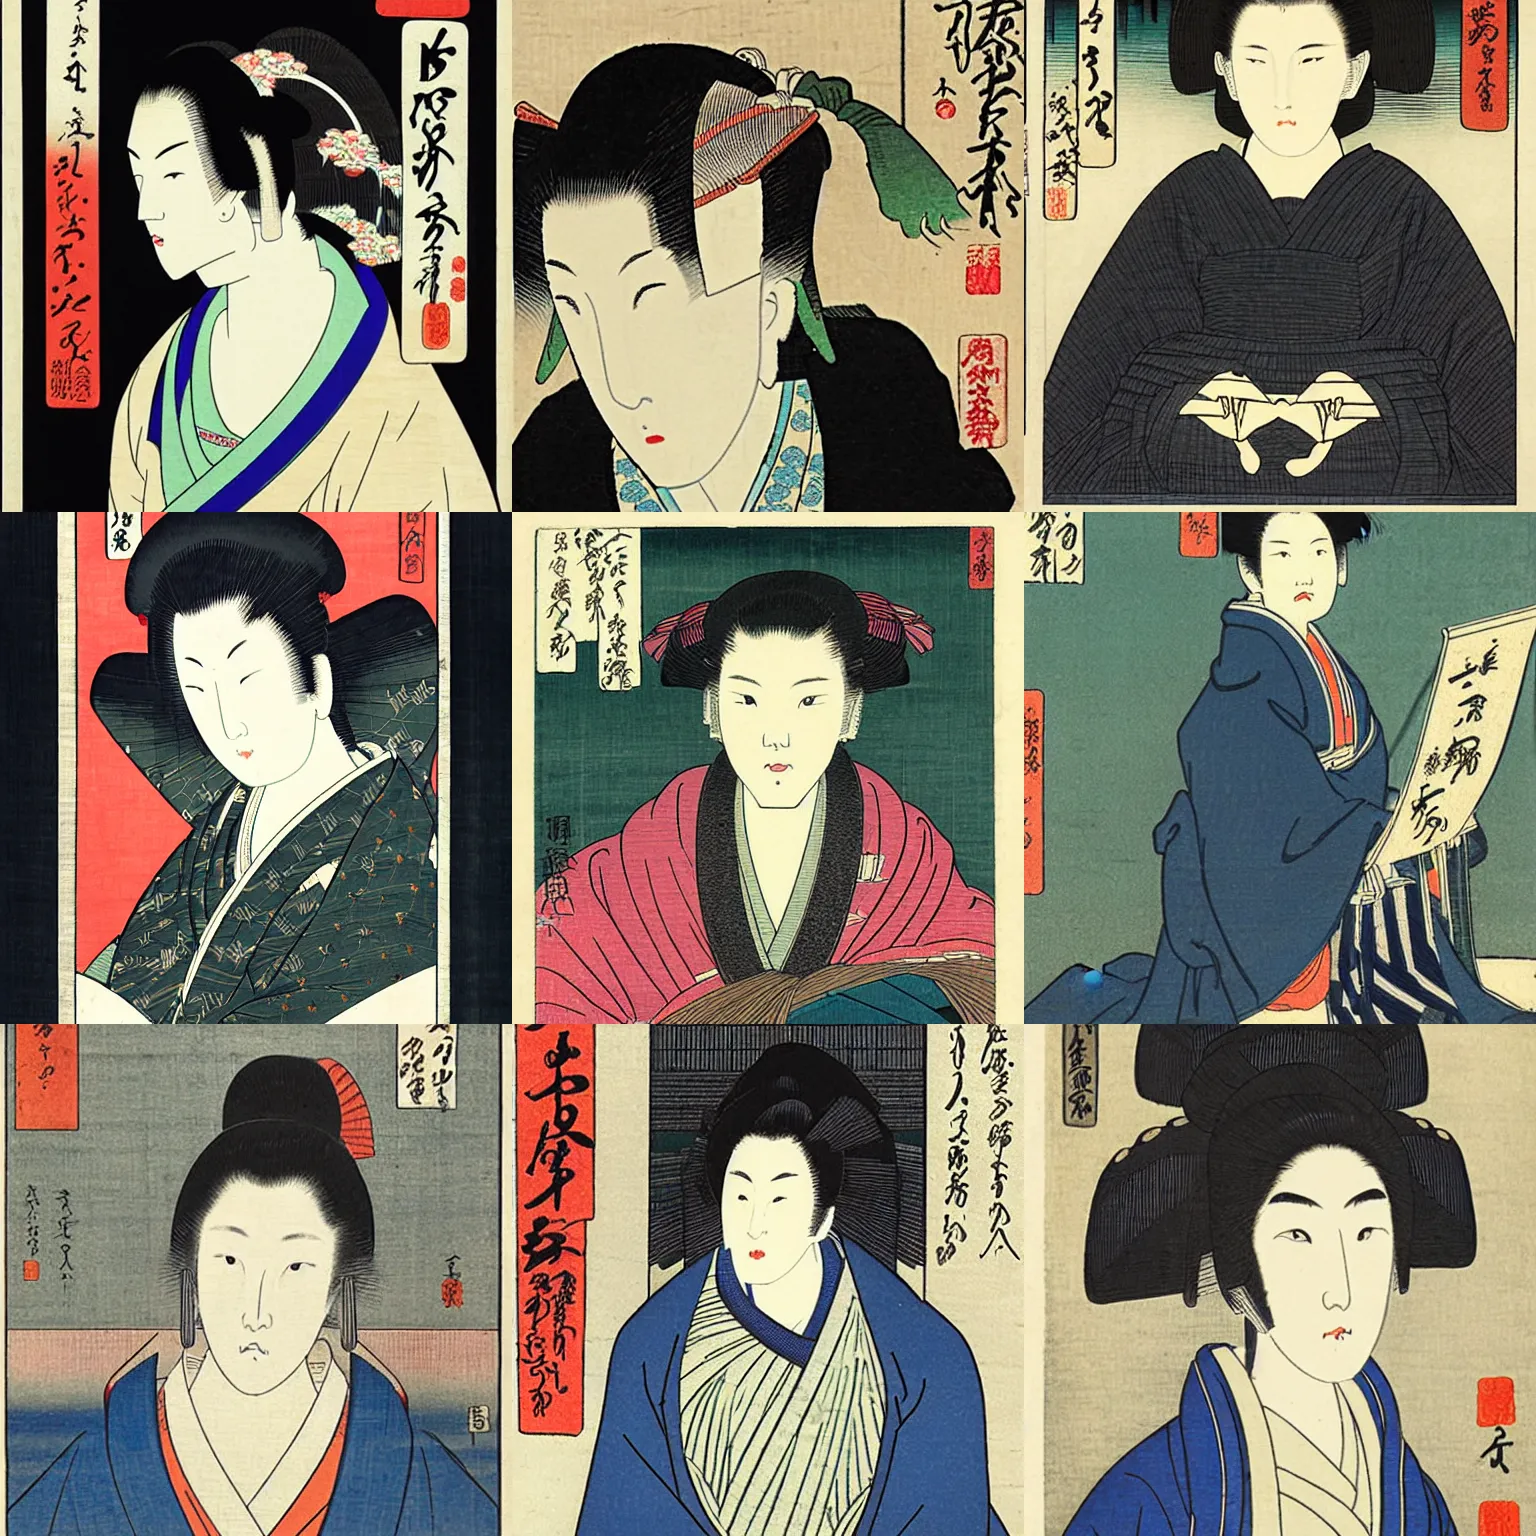 Prompt: beautiful woman portrait, by Utagawa Hiroshige